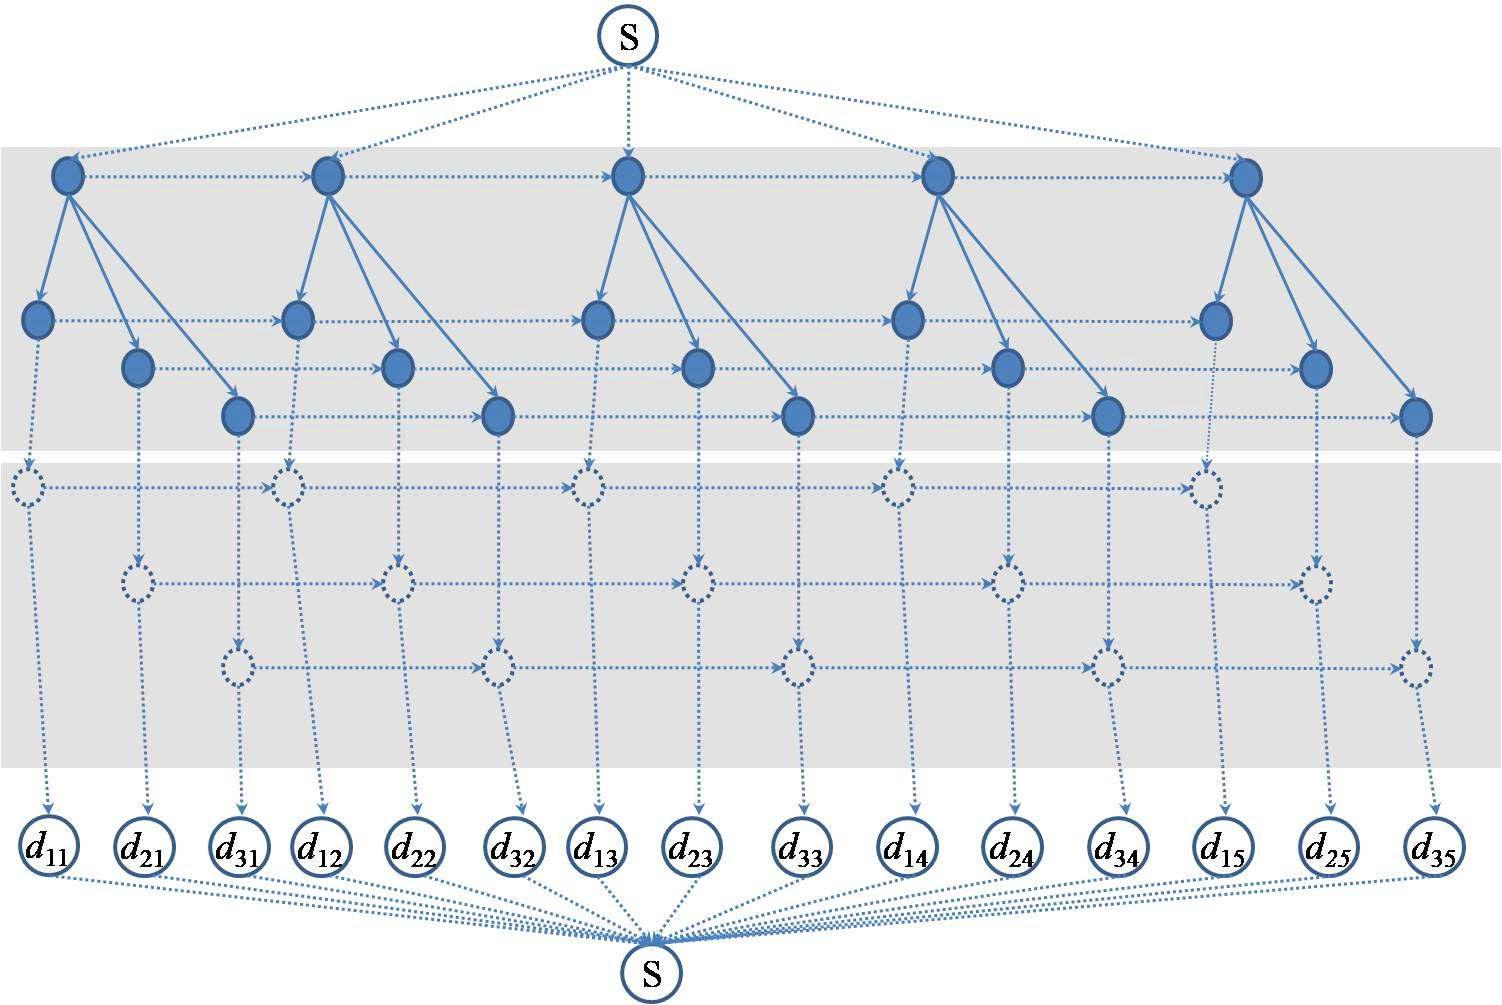 단순화된 네트워크 표현 : 네트워크상에서의 물류 흐름